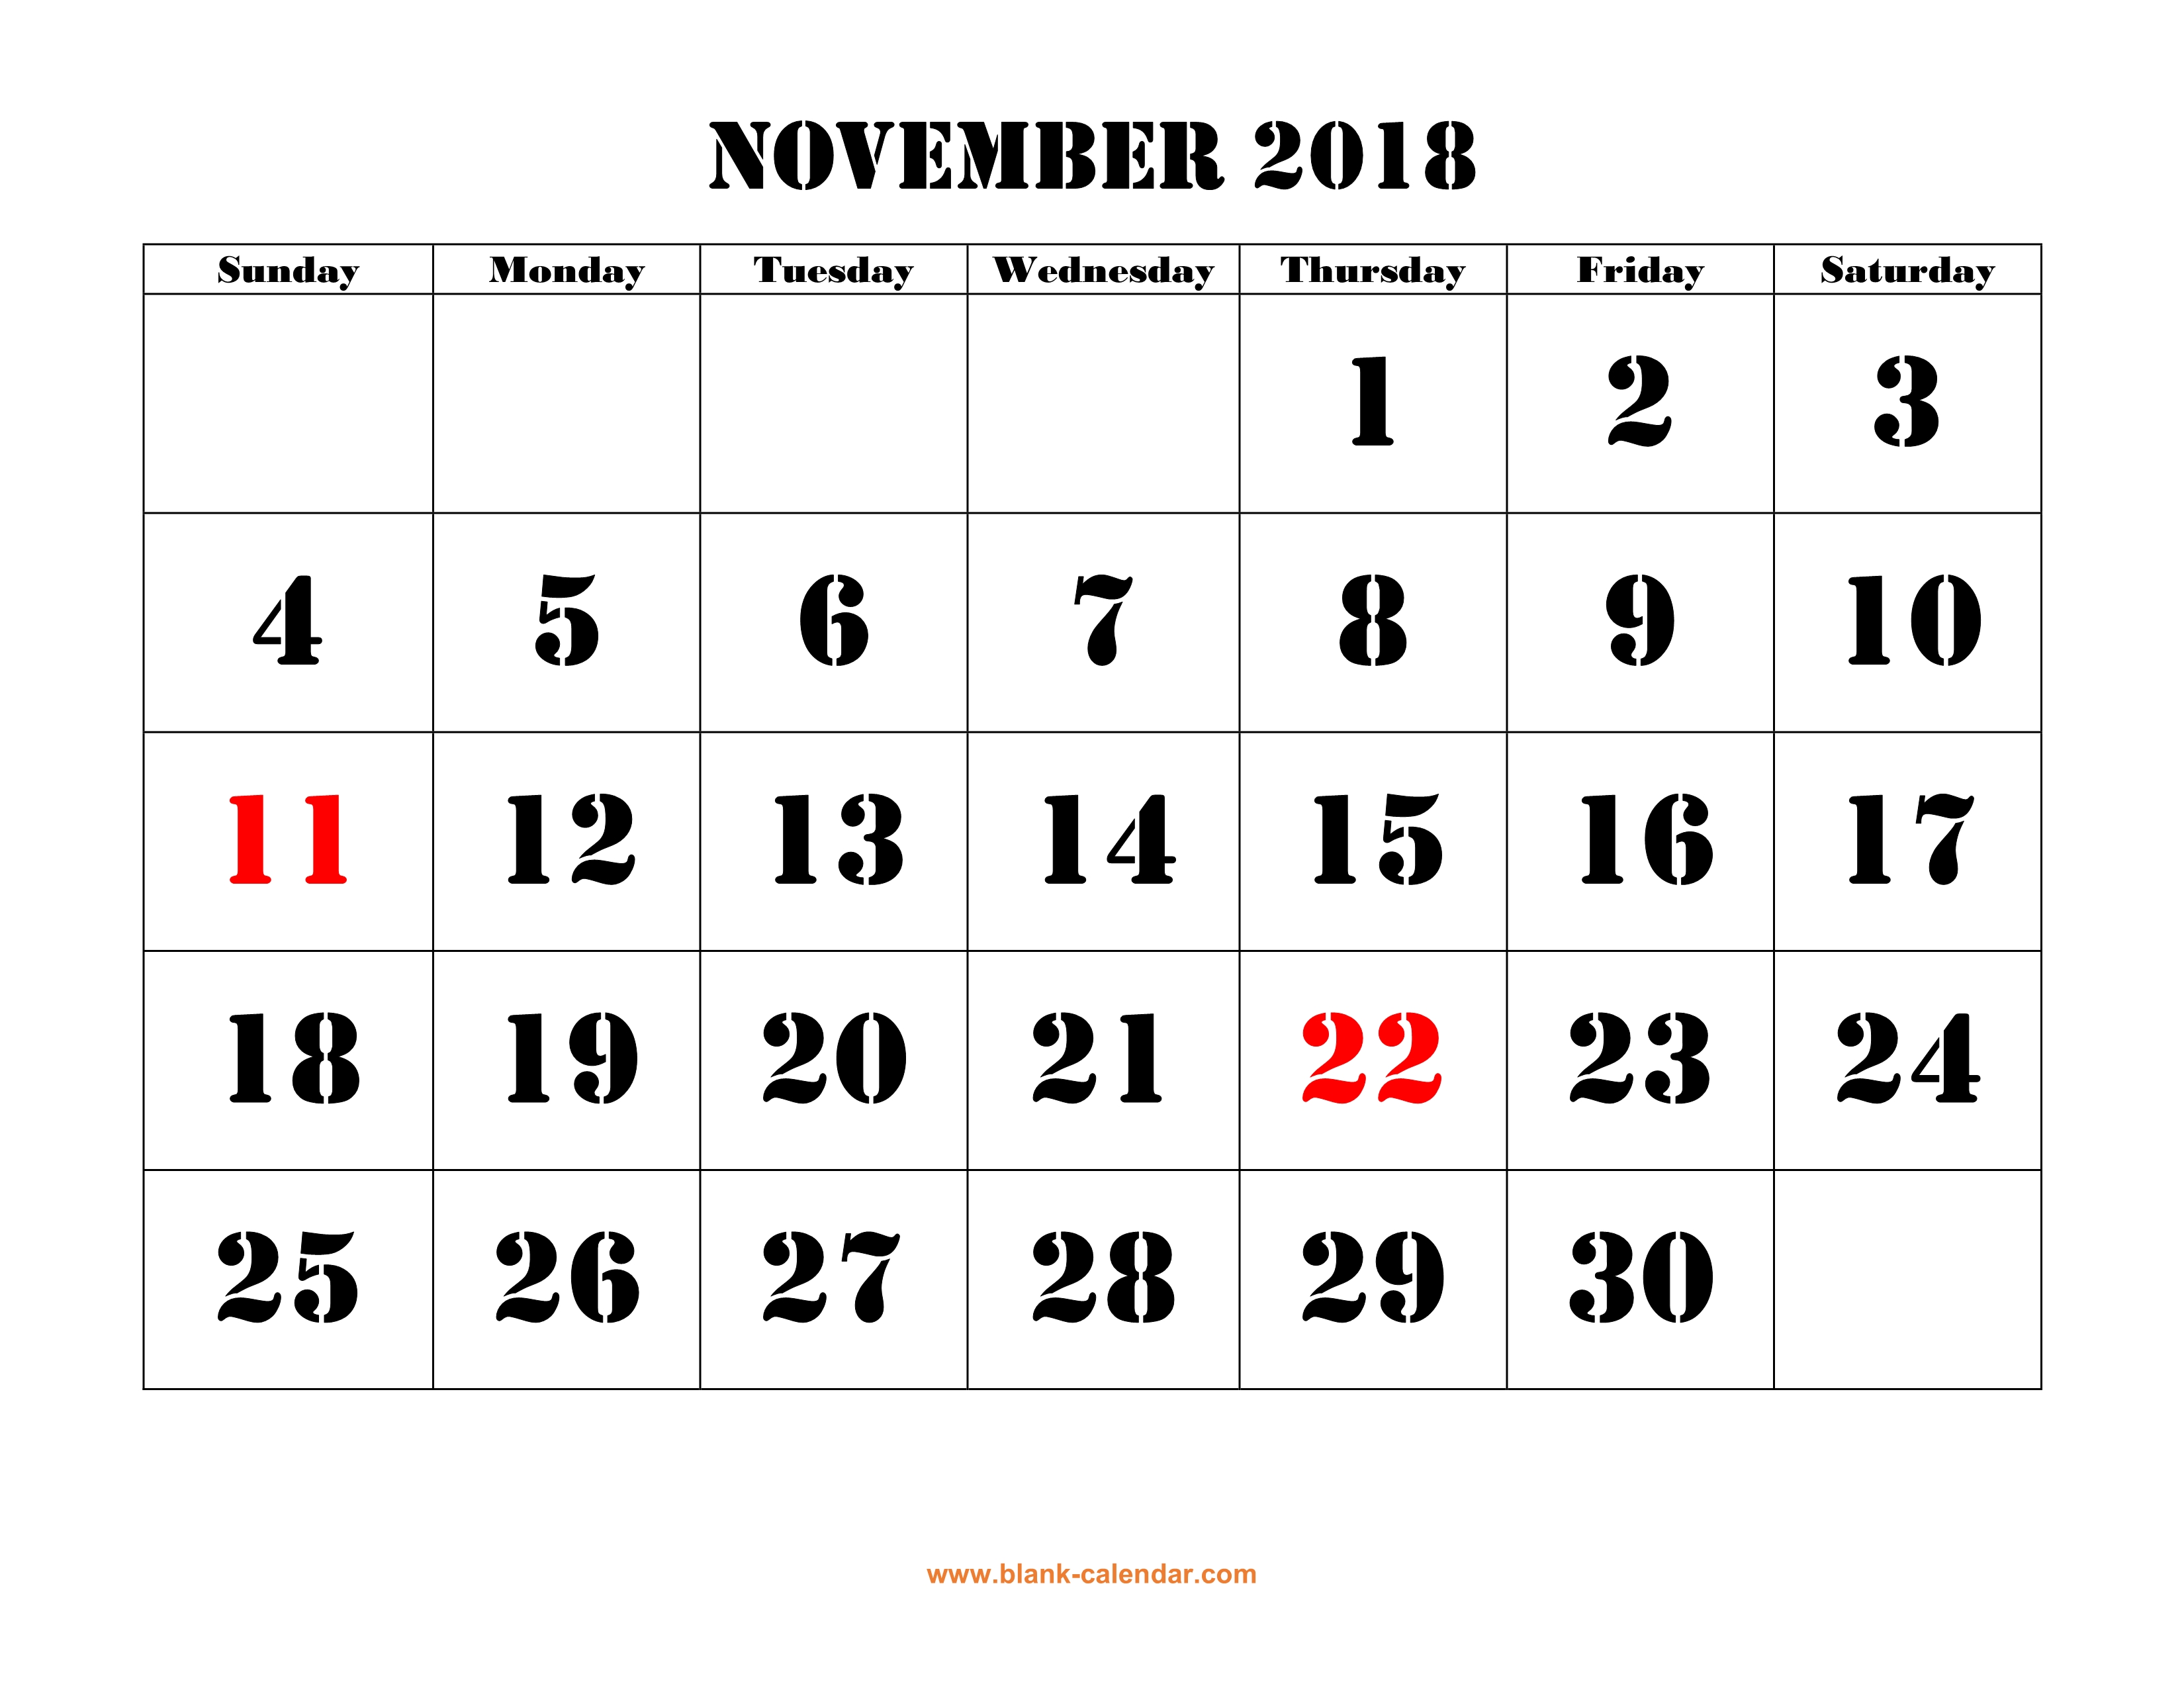 free-download-printable-november-2018-calendar-large-font-design-holidays-on-red